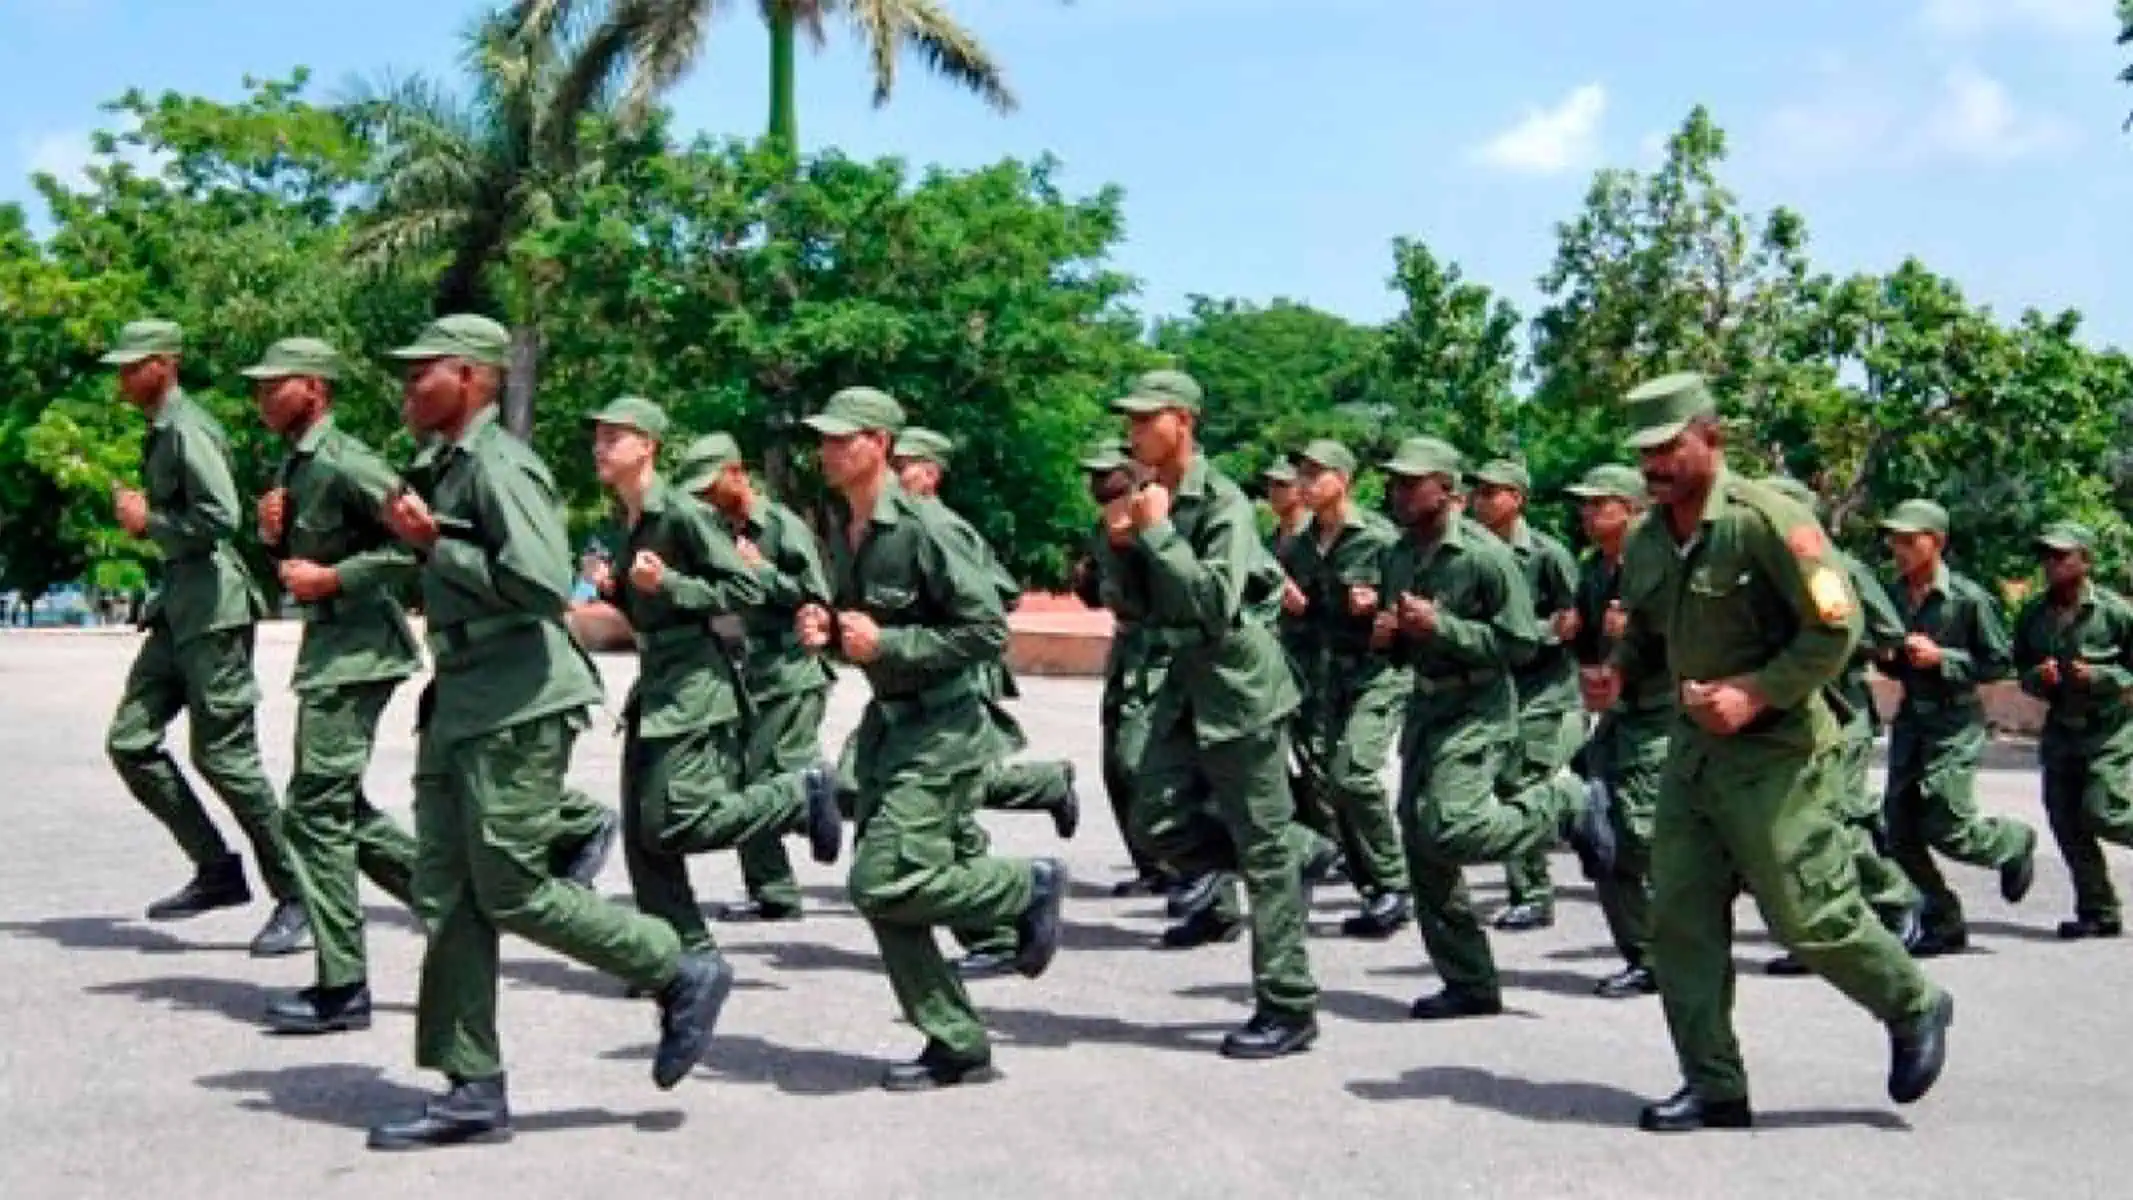 Joven se Suicida Durante Traslado al Servicio Militar en Cuba